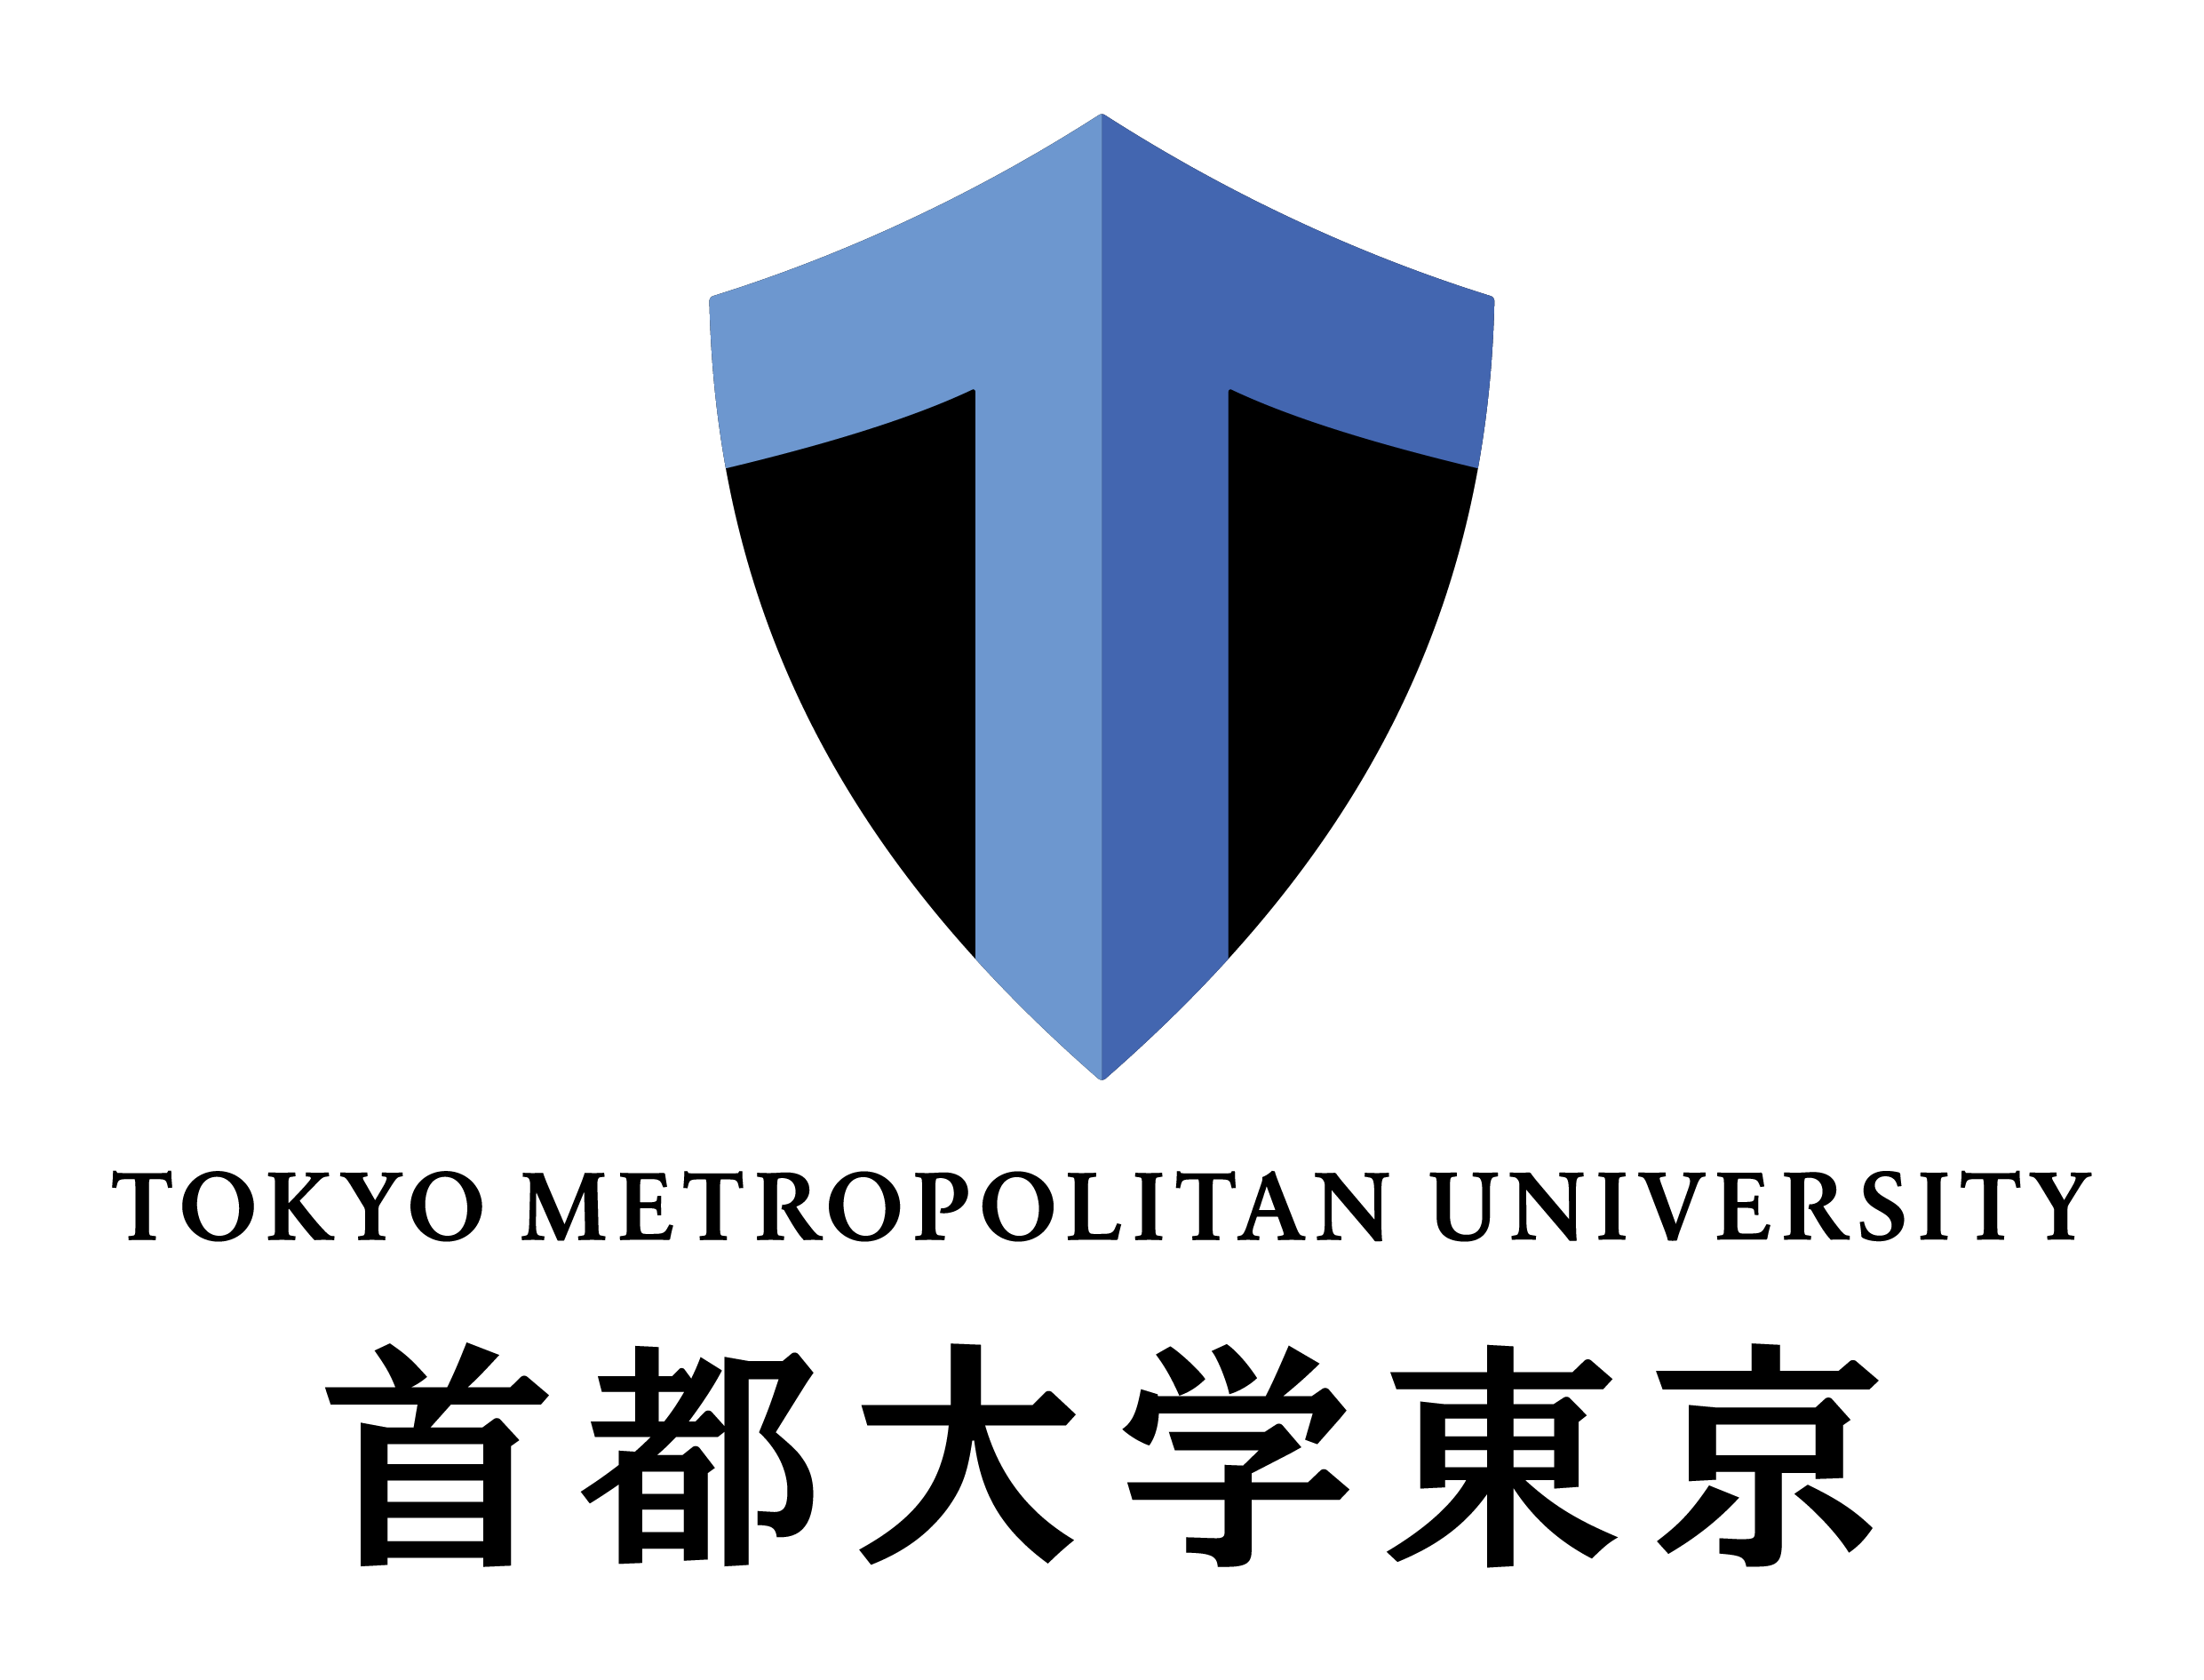 「TMU Vision 2030～学問の力で、東京から世界の未来を拓く～」を策定しました。のアイキャッチ画像